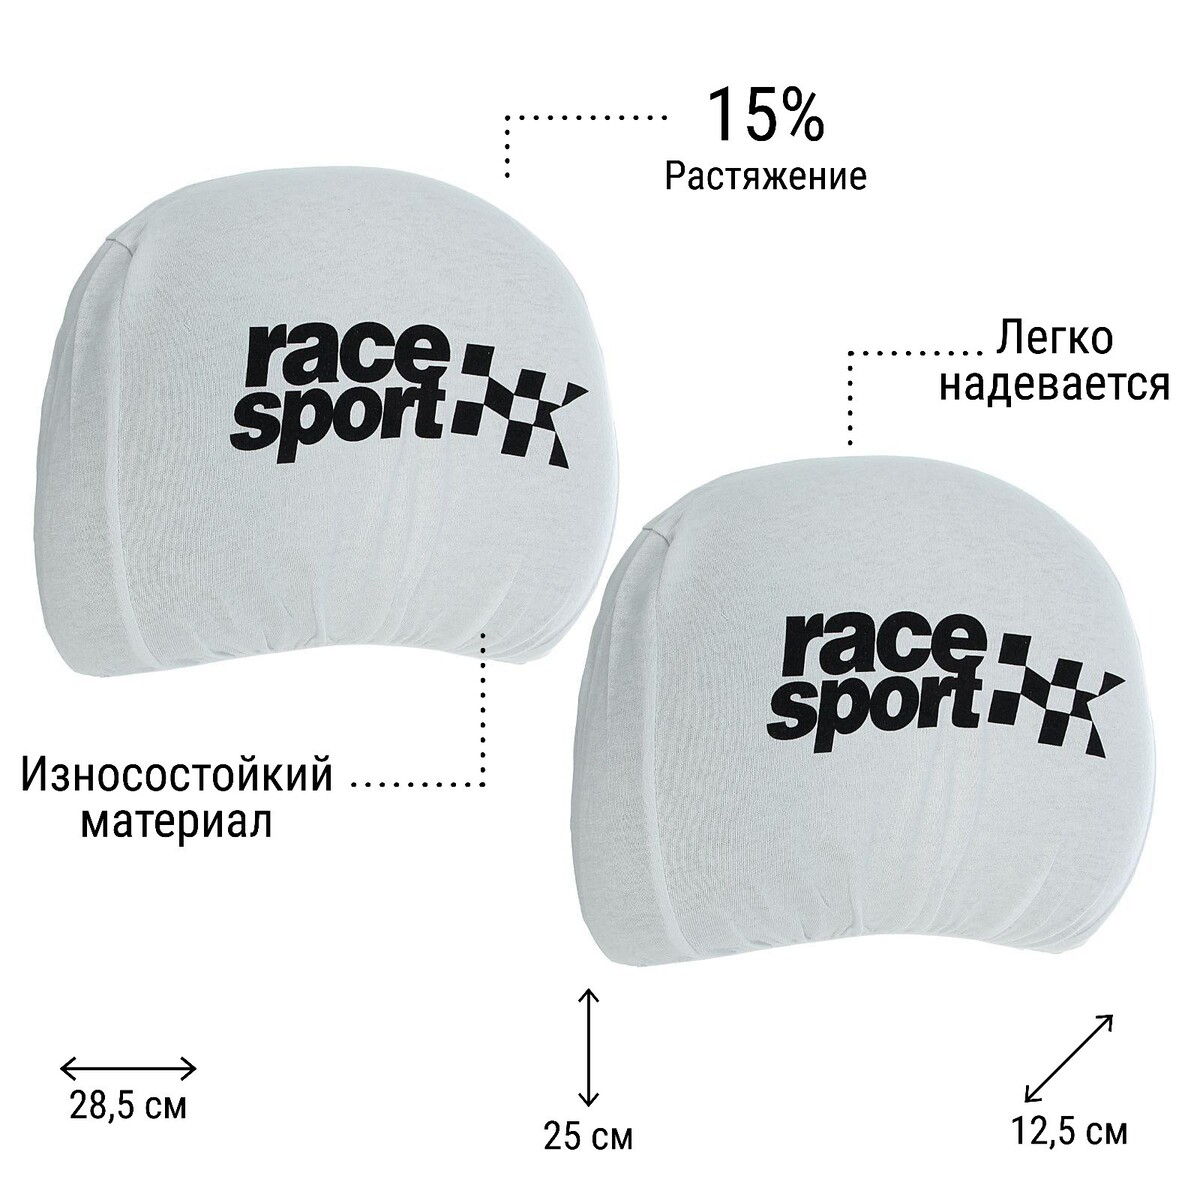    race sport, ,  2 